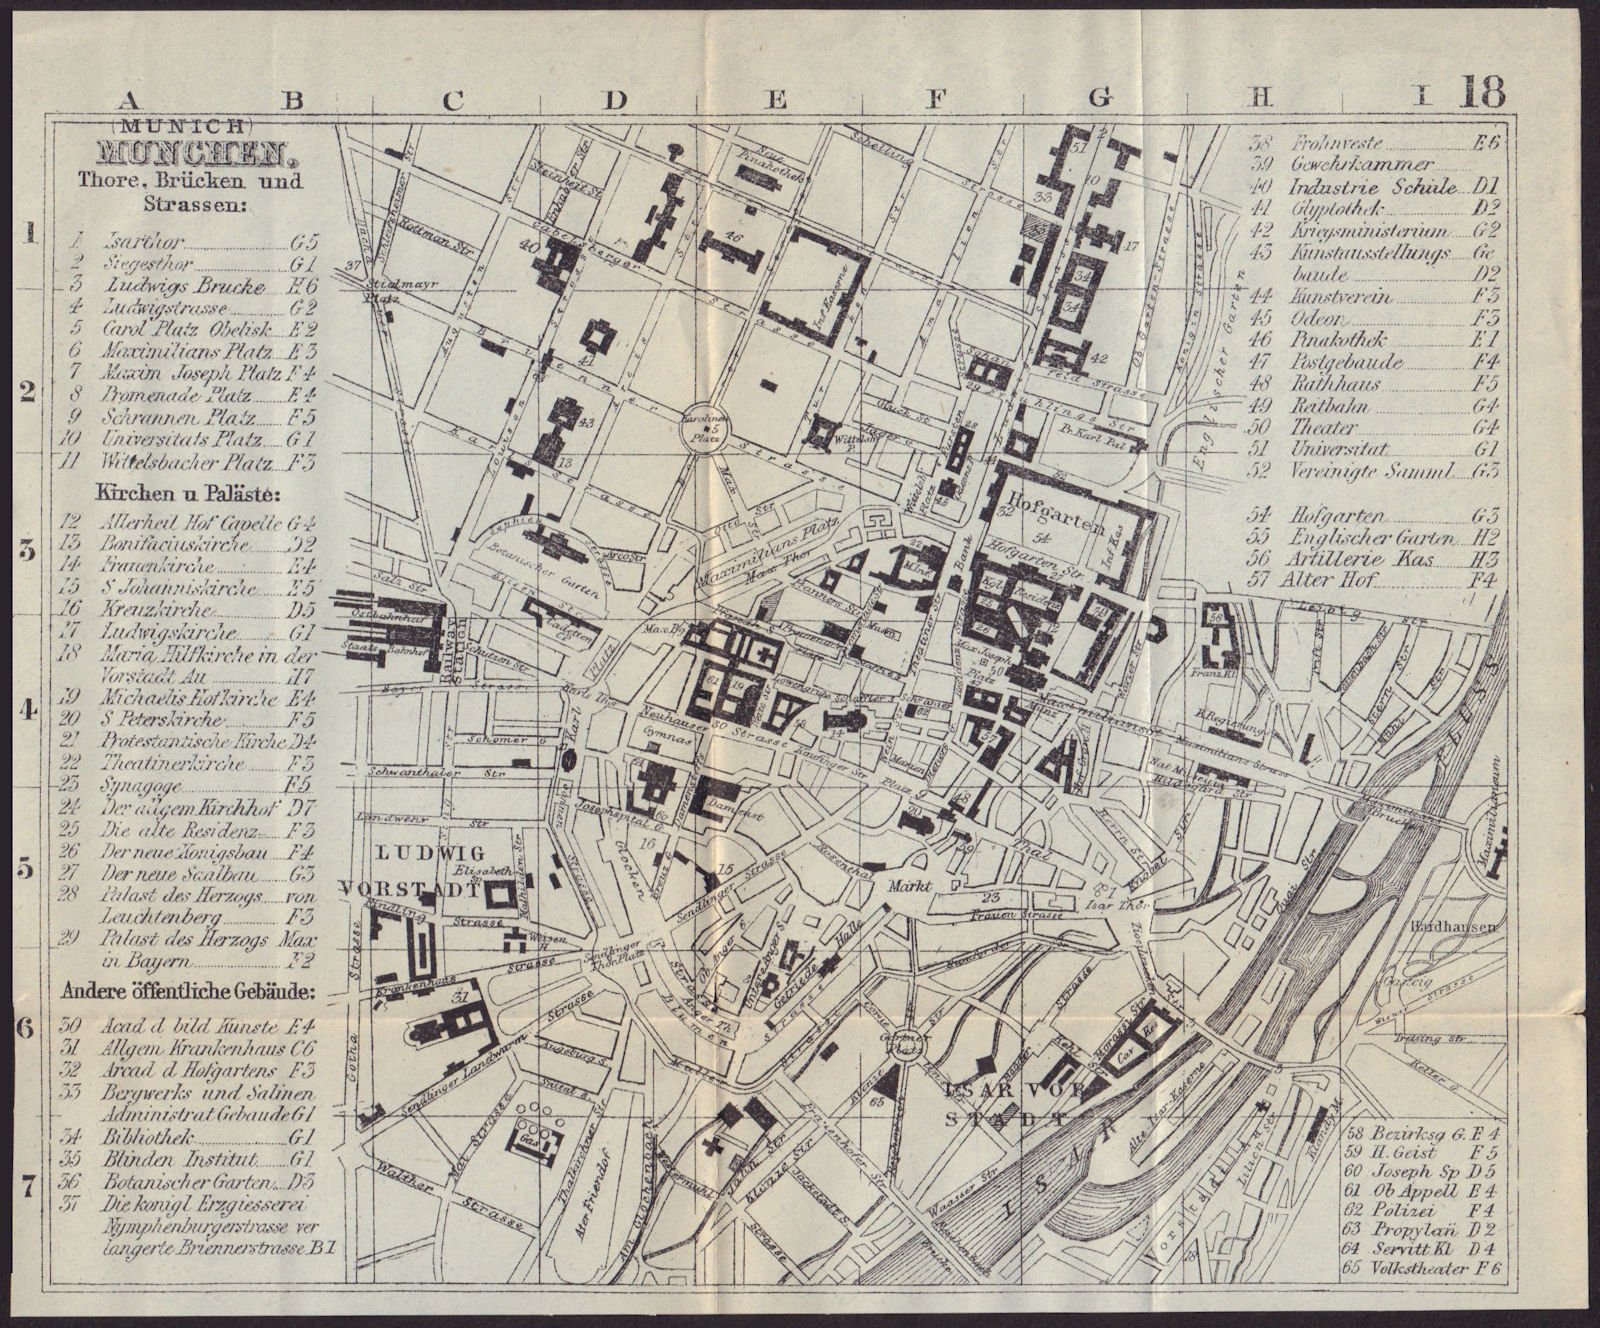 MUNICH MÜNCHEN MUNCHEN antique town plan city map. Germany. BRADSHAW 1892